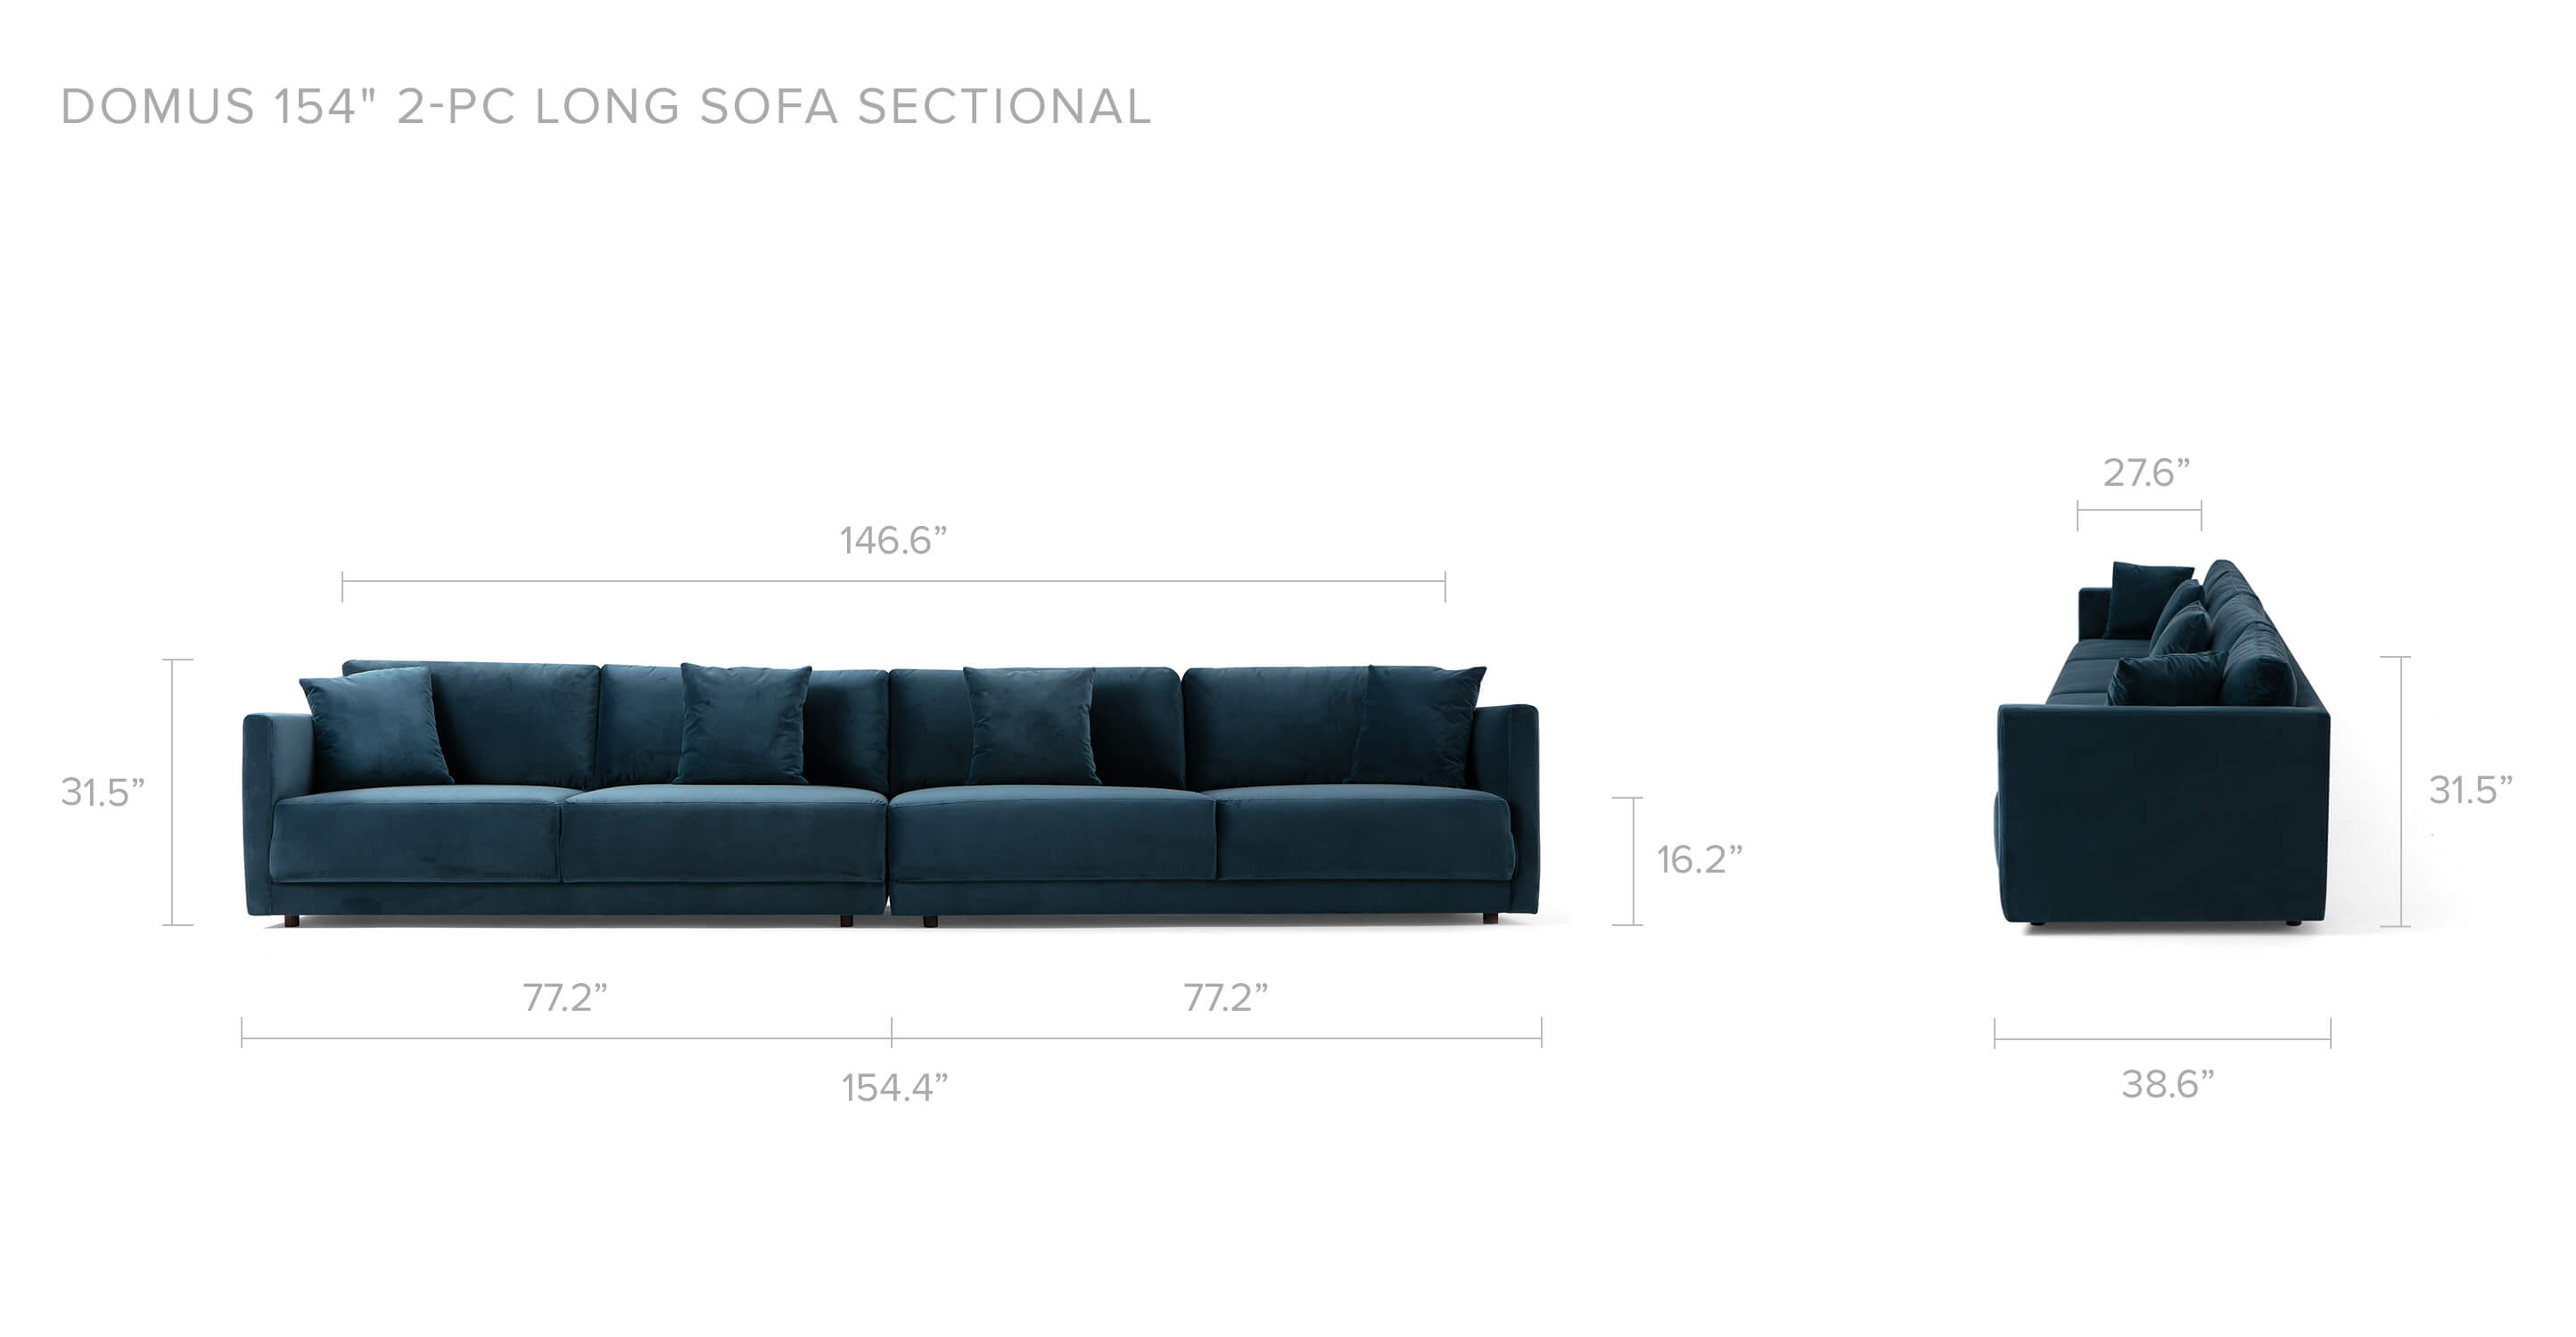 Petrol Velvet Sectional Domus 154" 2-pc Long Sofa